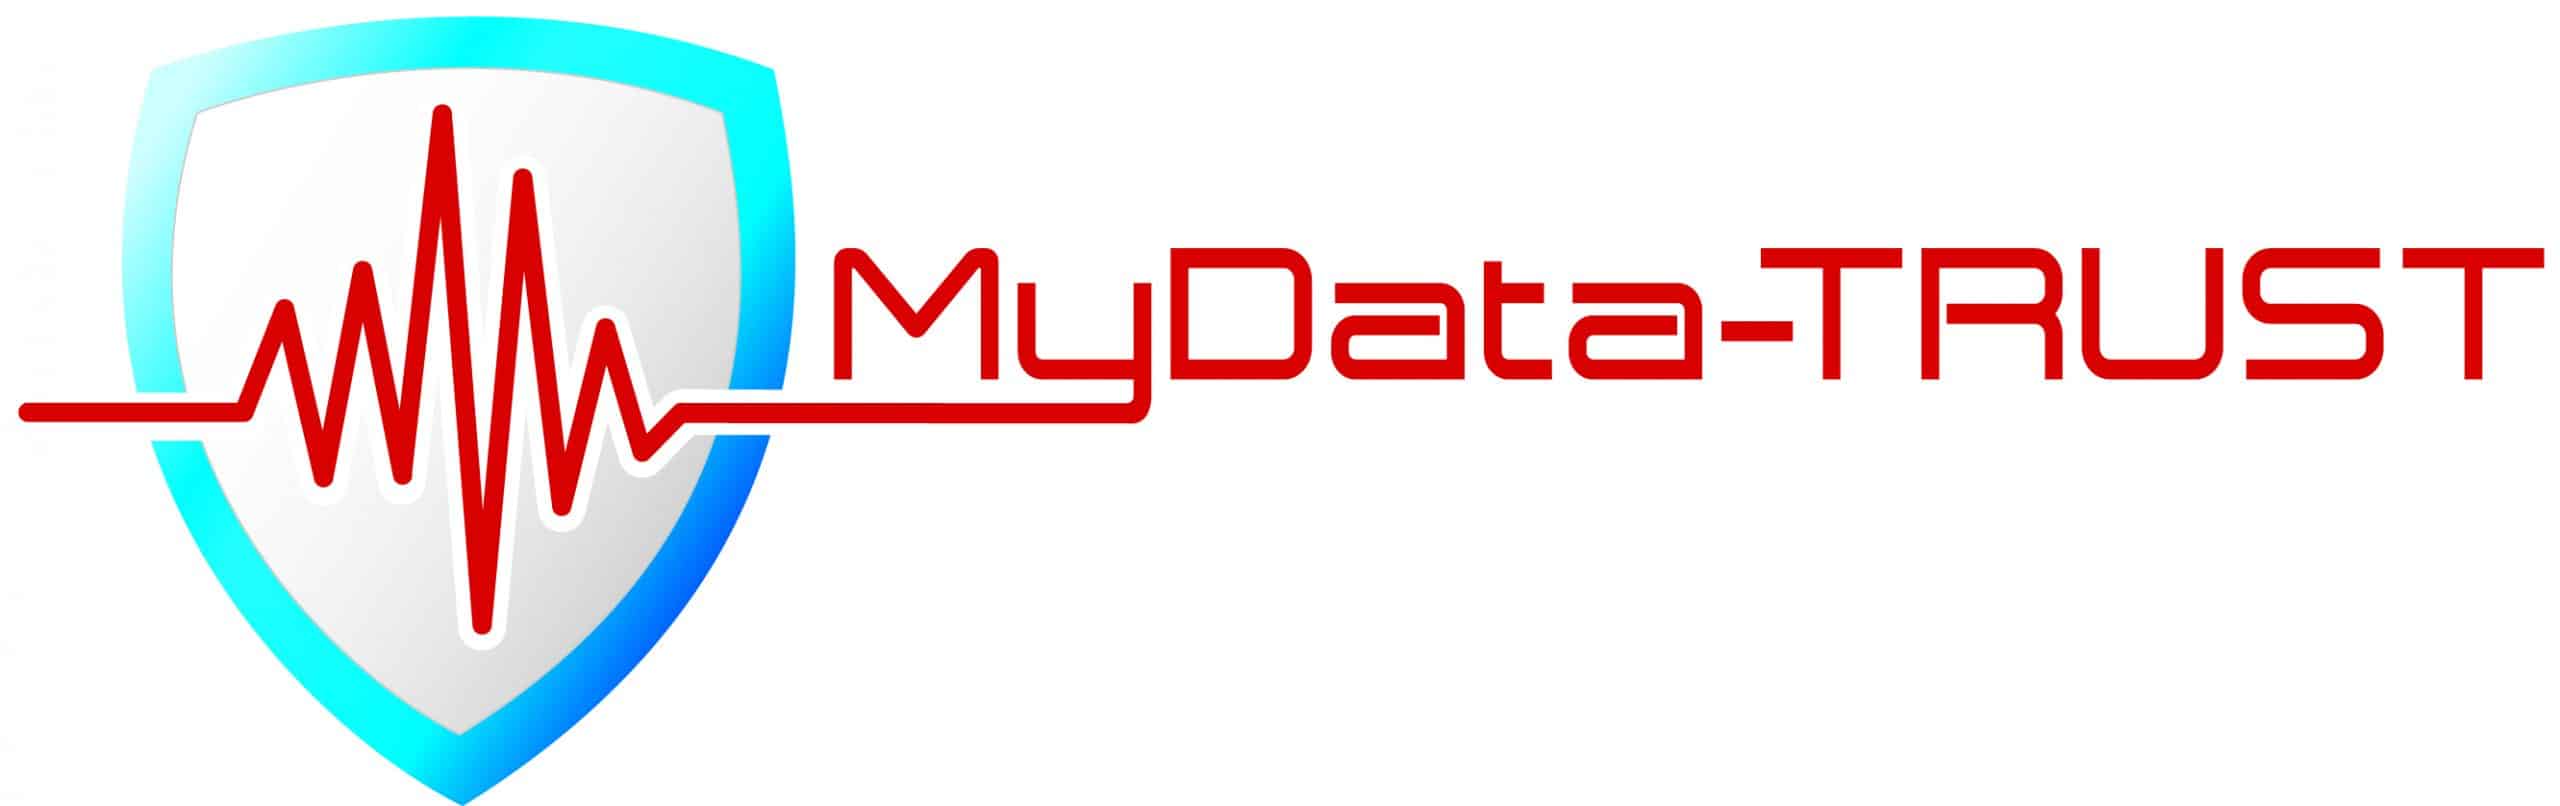 logo mydatatrust